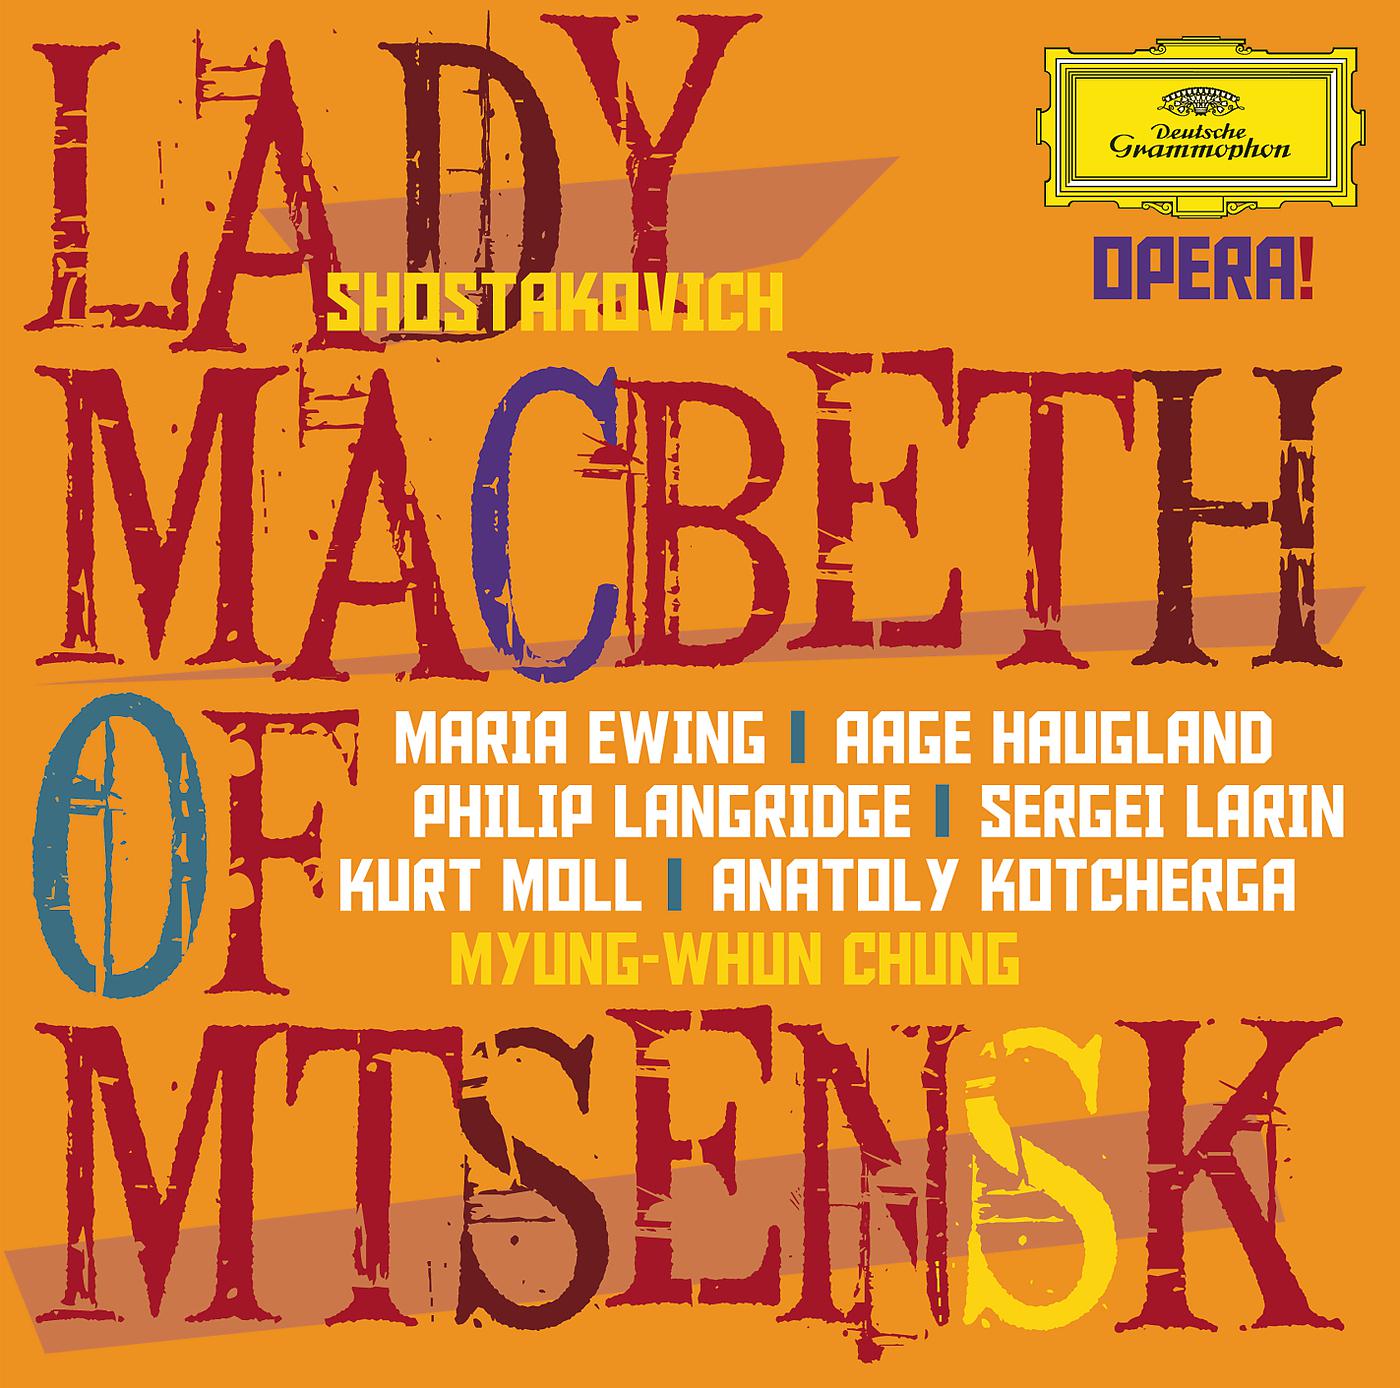 Постер альбома Shostakovich: Lady Macbeth of Mtsensk